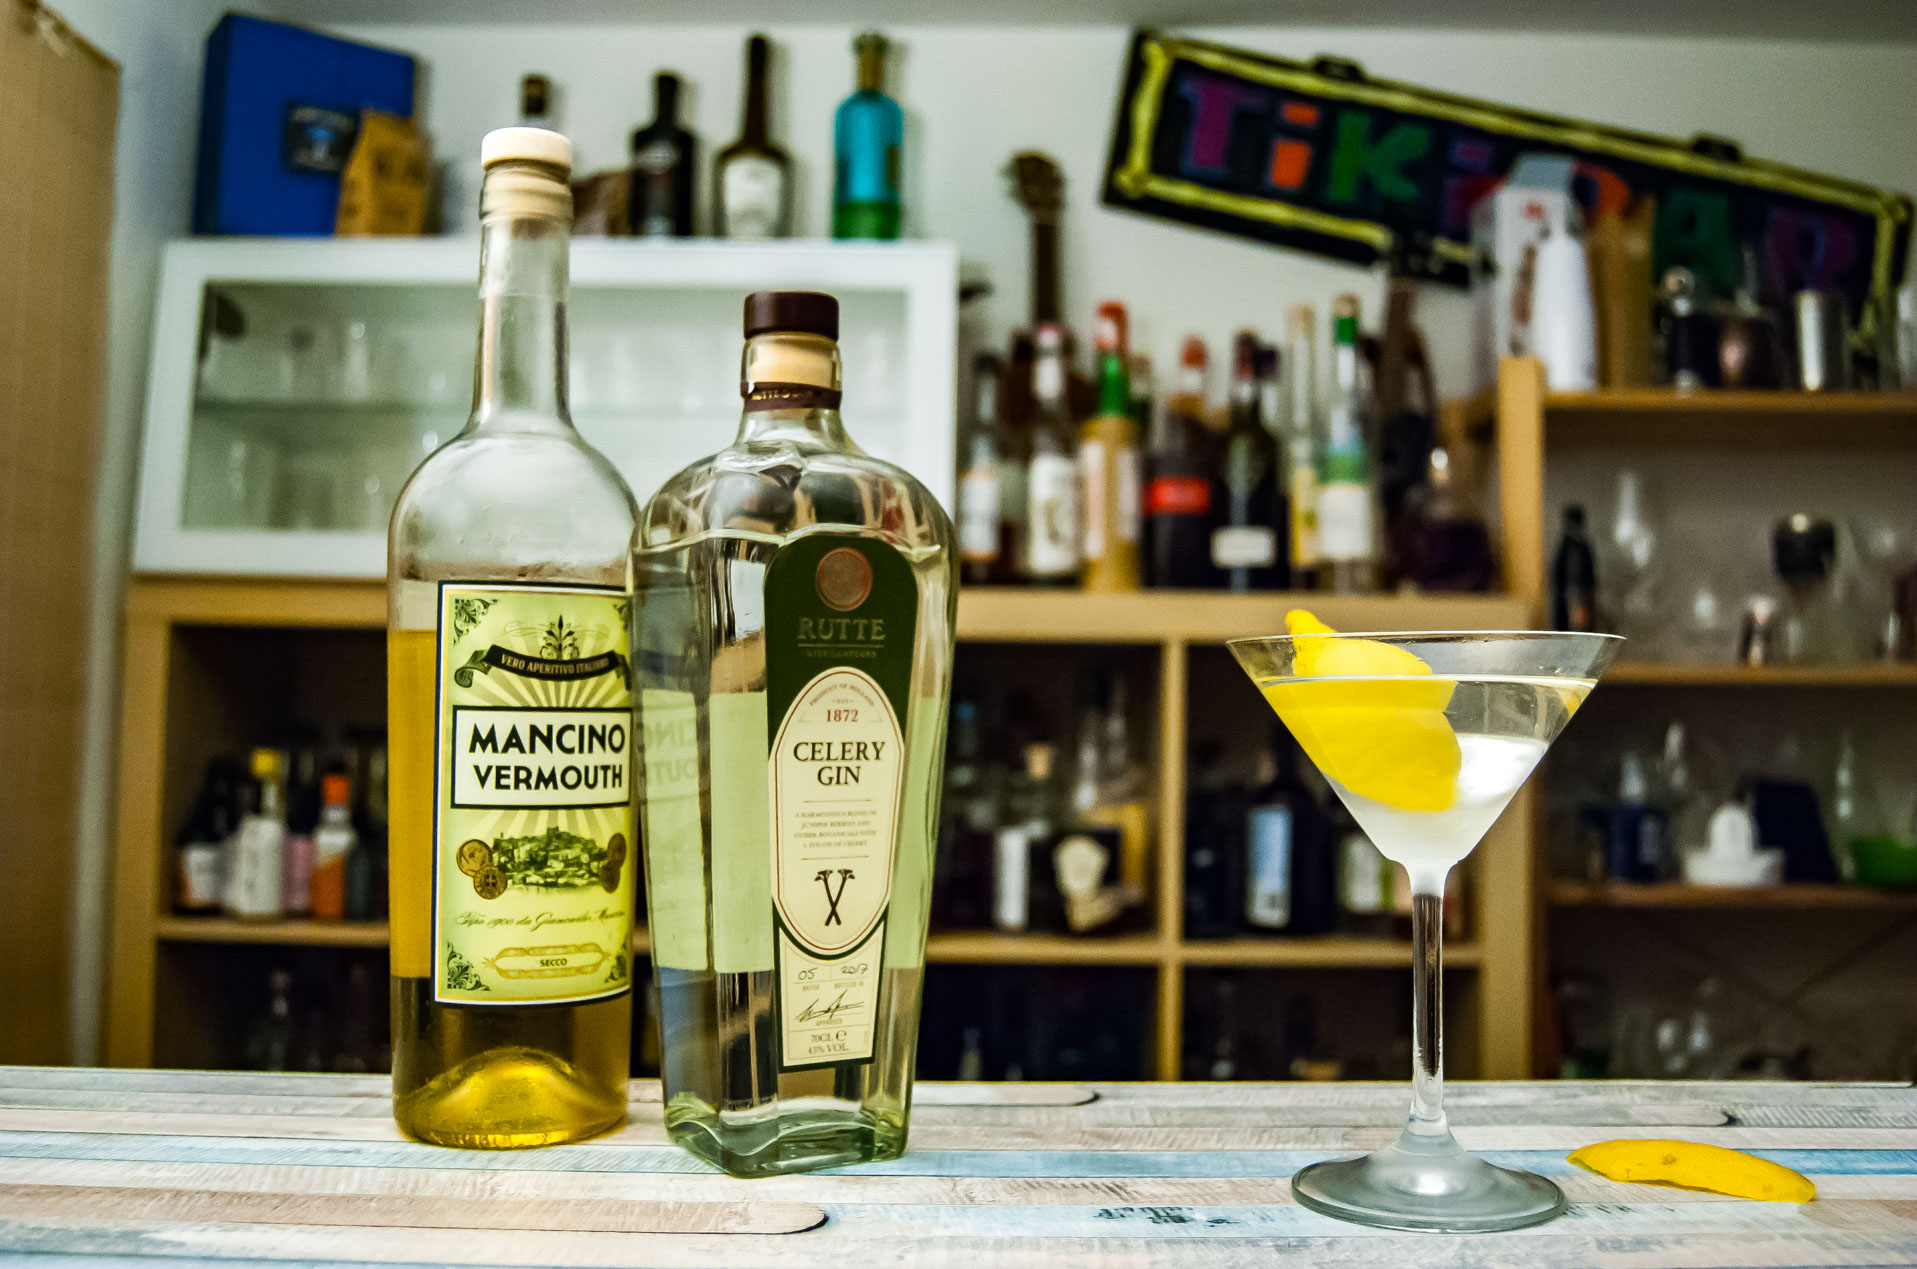 Rutte Celery Gin dans un Martini avec Mancino Vermouth Secco. 